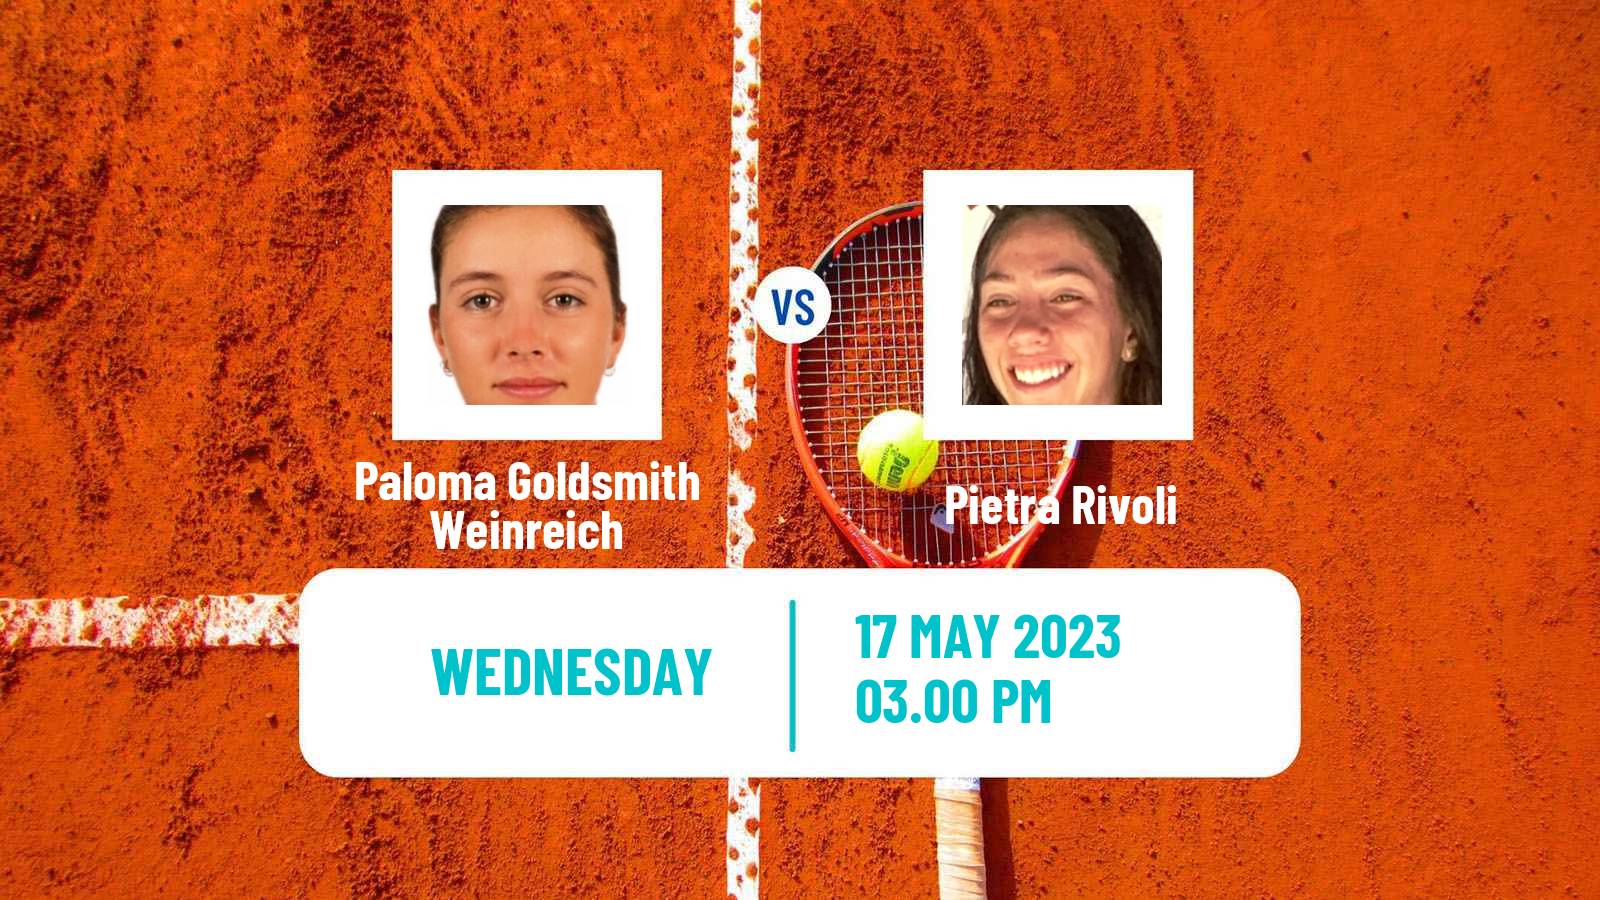 Tennis ITF W15 Curitiba Women Paloma Goldsmith Weinreich - Pietra Rivoli